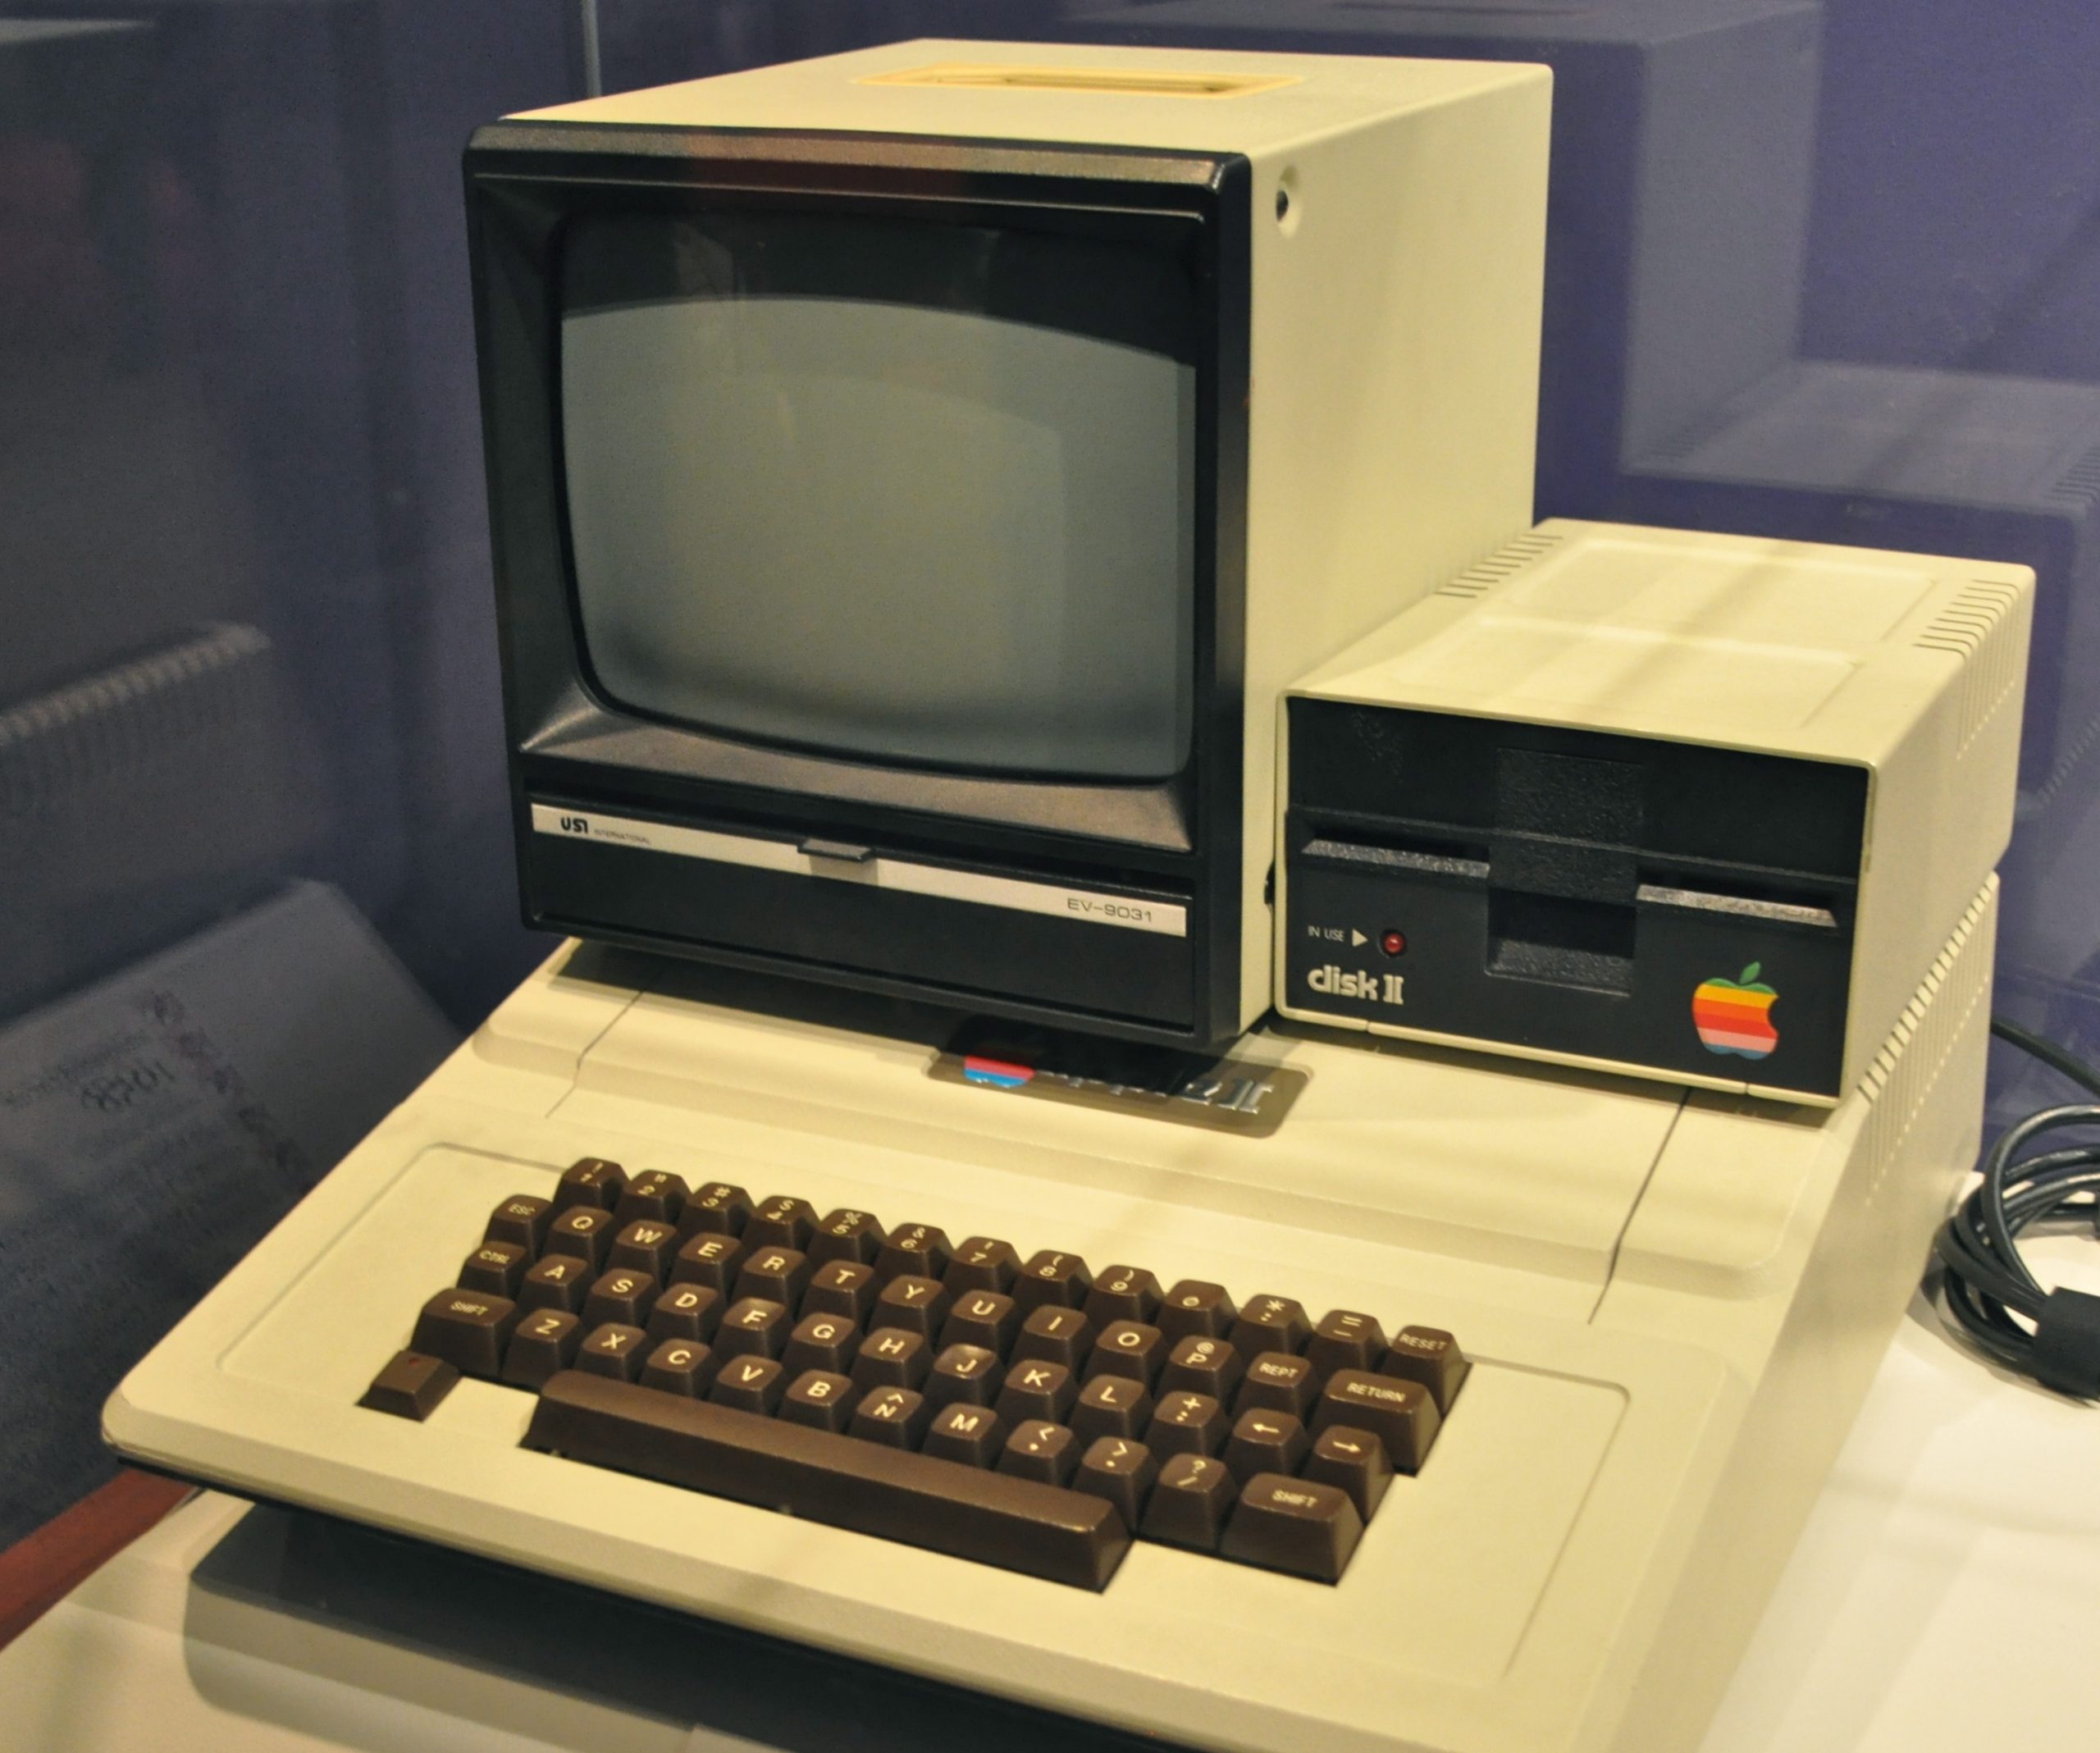 De Apple II kwam in 1977 op de markt. Foto: Kevin Burkett/Flickr (CC BY-SA 2.0)